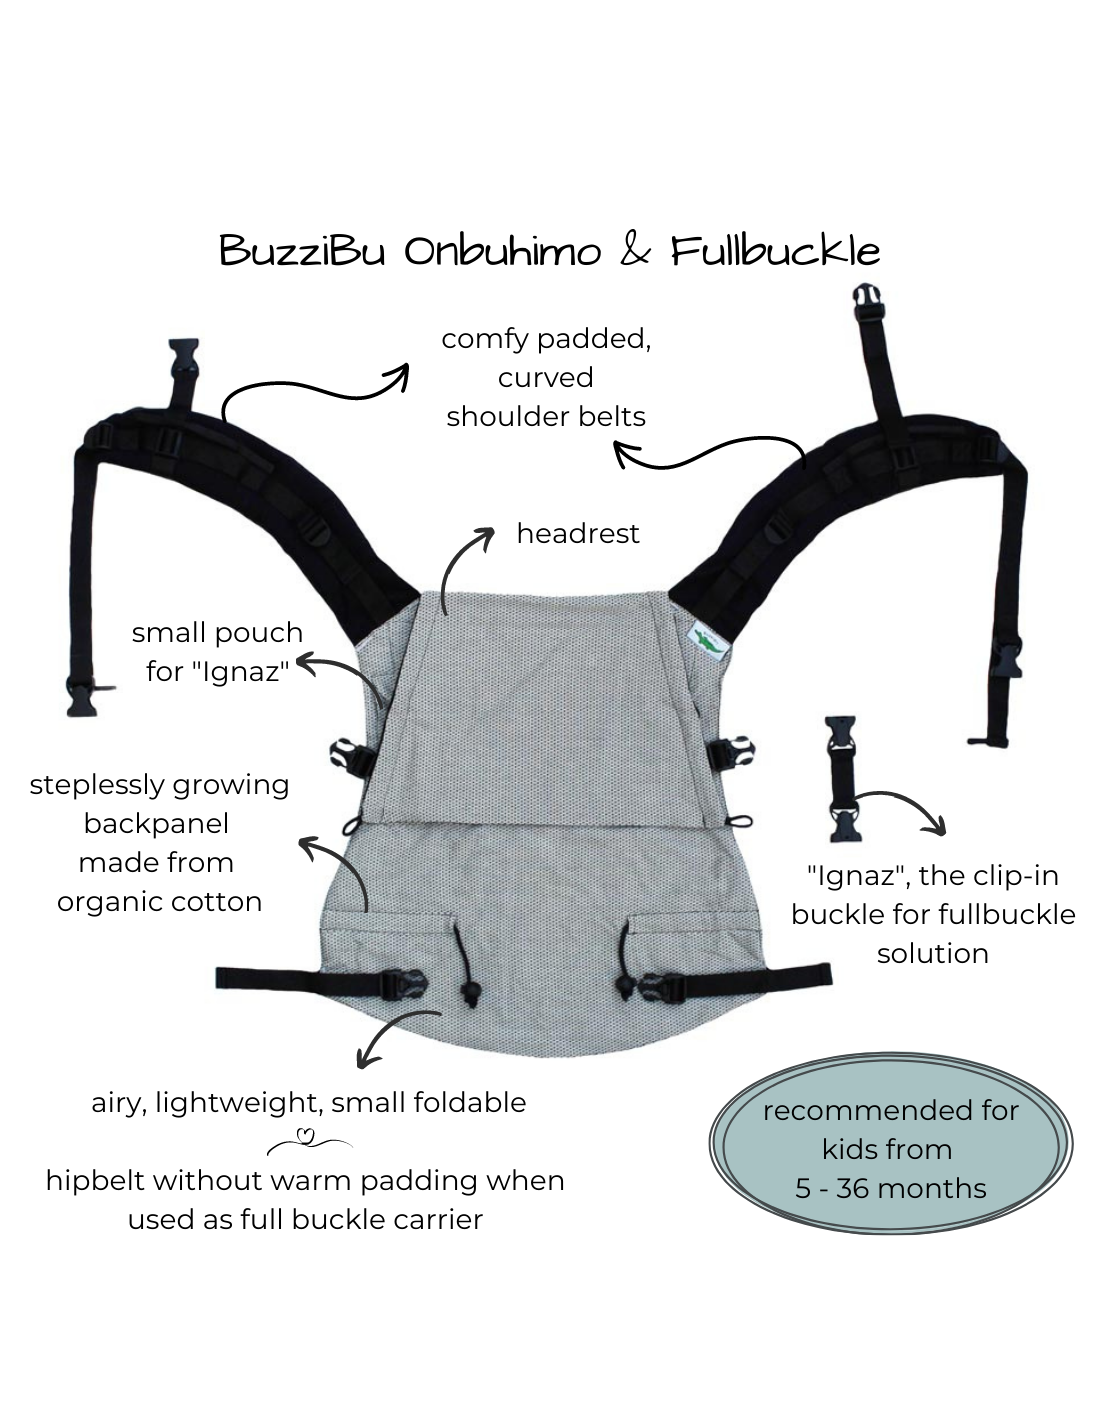 Buzzidil BuzziBu Hildegard over the rainbow - Onbuhimo & Fullbuckle